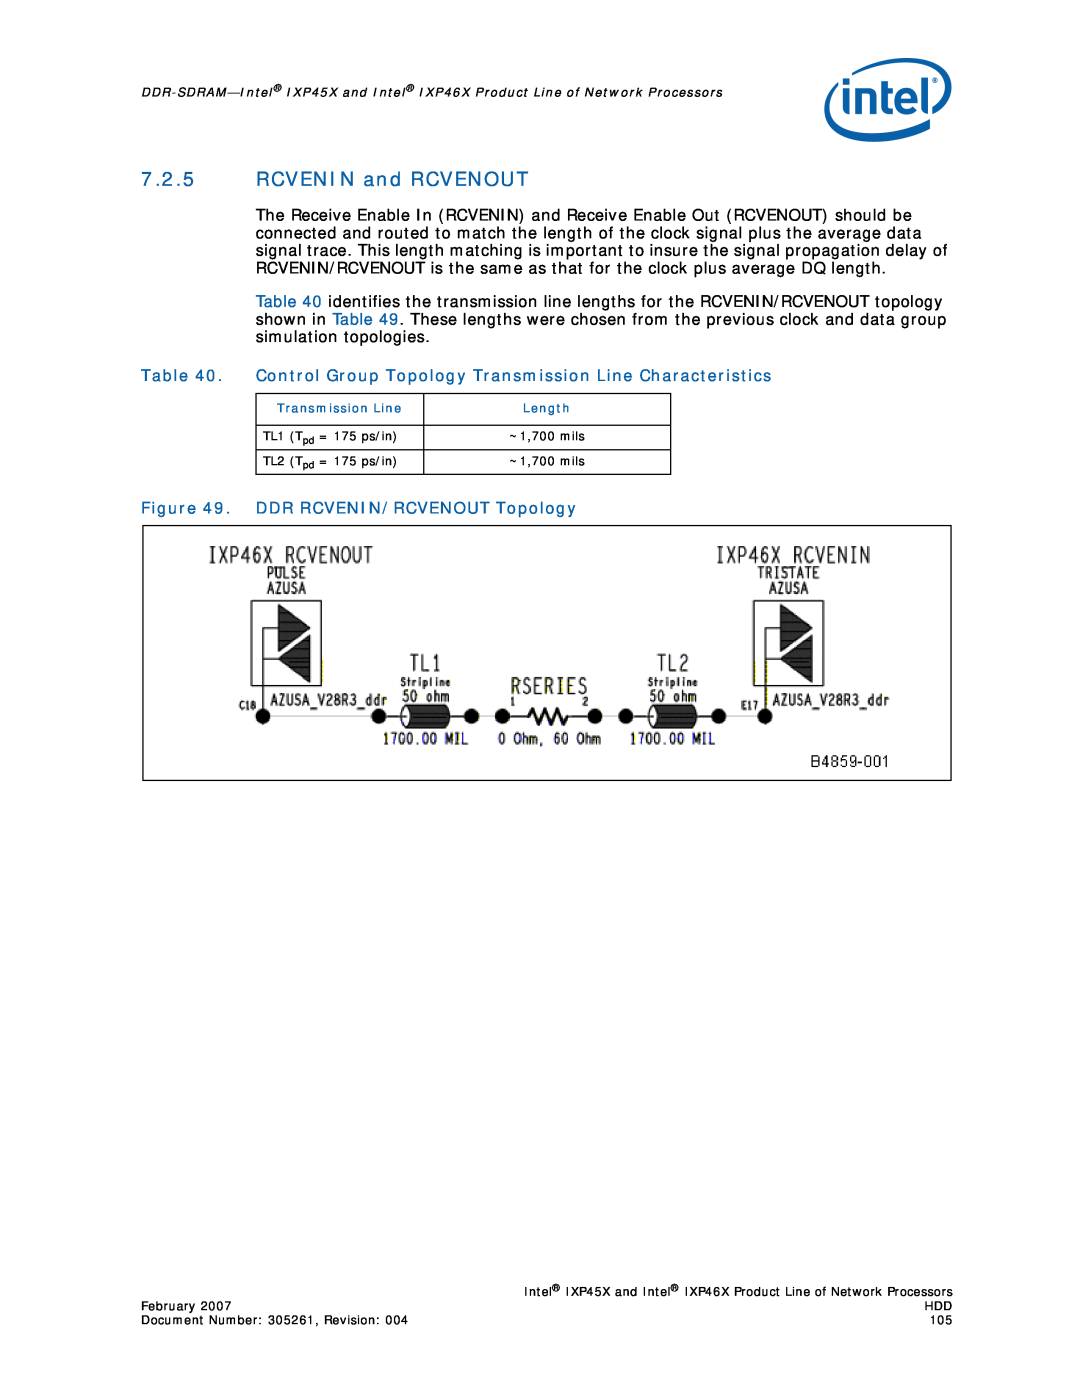 Intel IXP45X, IXP46X manual 7.2.5RCVENIN and RCVENOUT, DDR RCVENIN/RCVENOUT Topology 